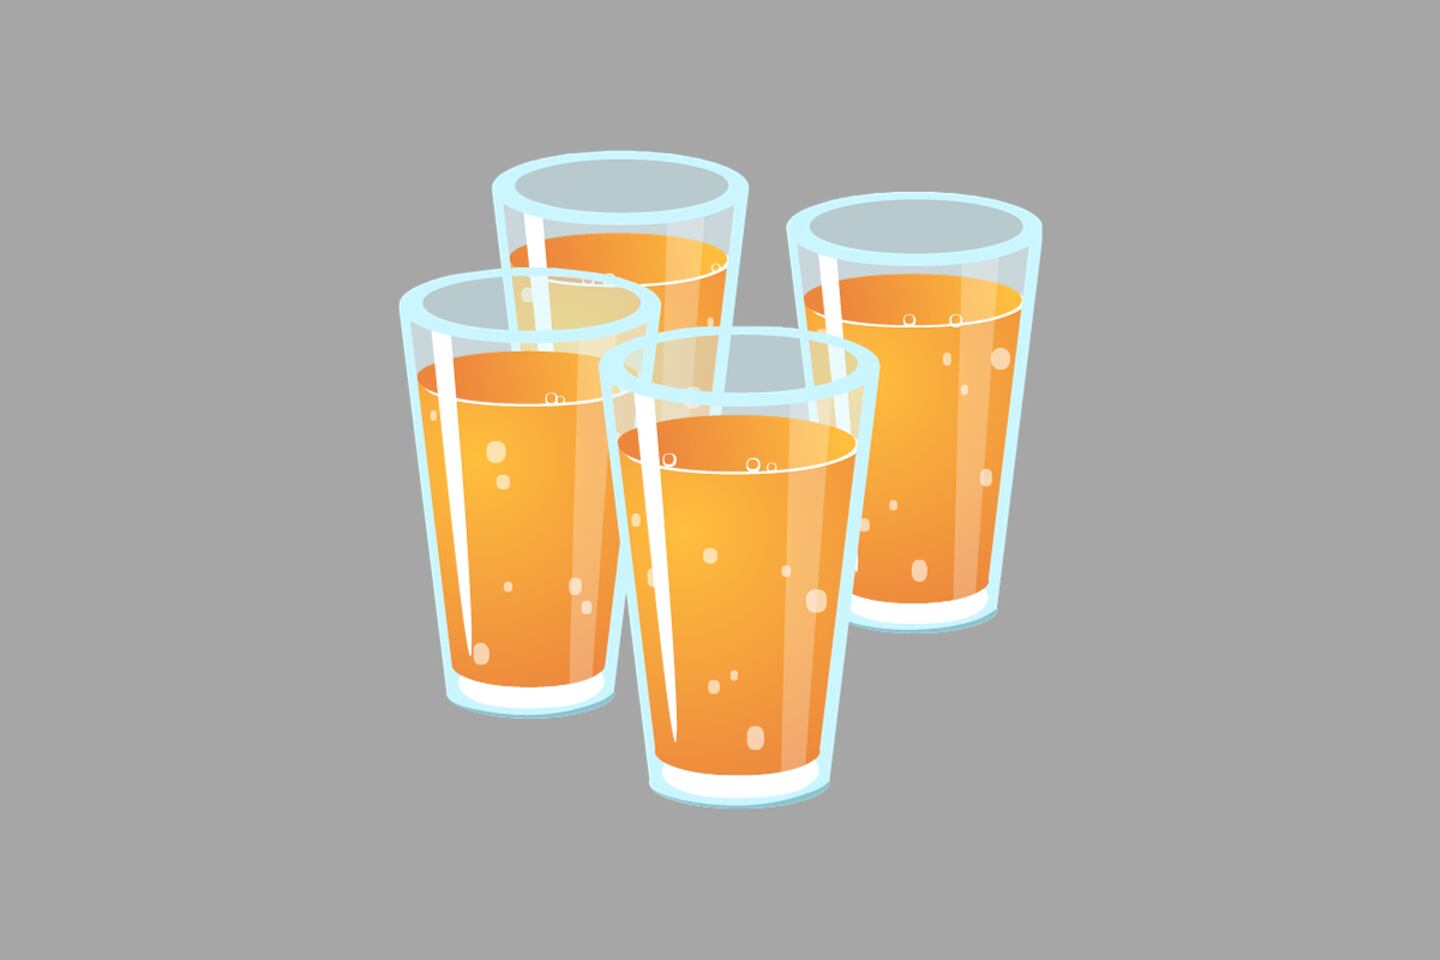 En este test visual se ve la imagen de 4 vasos con un líquido amarillo, con un fondo gris.